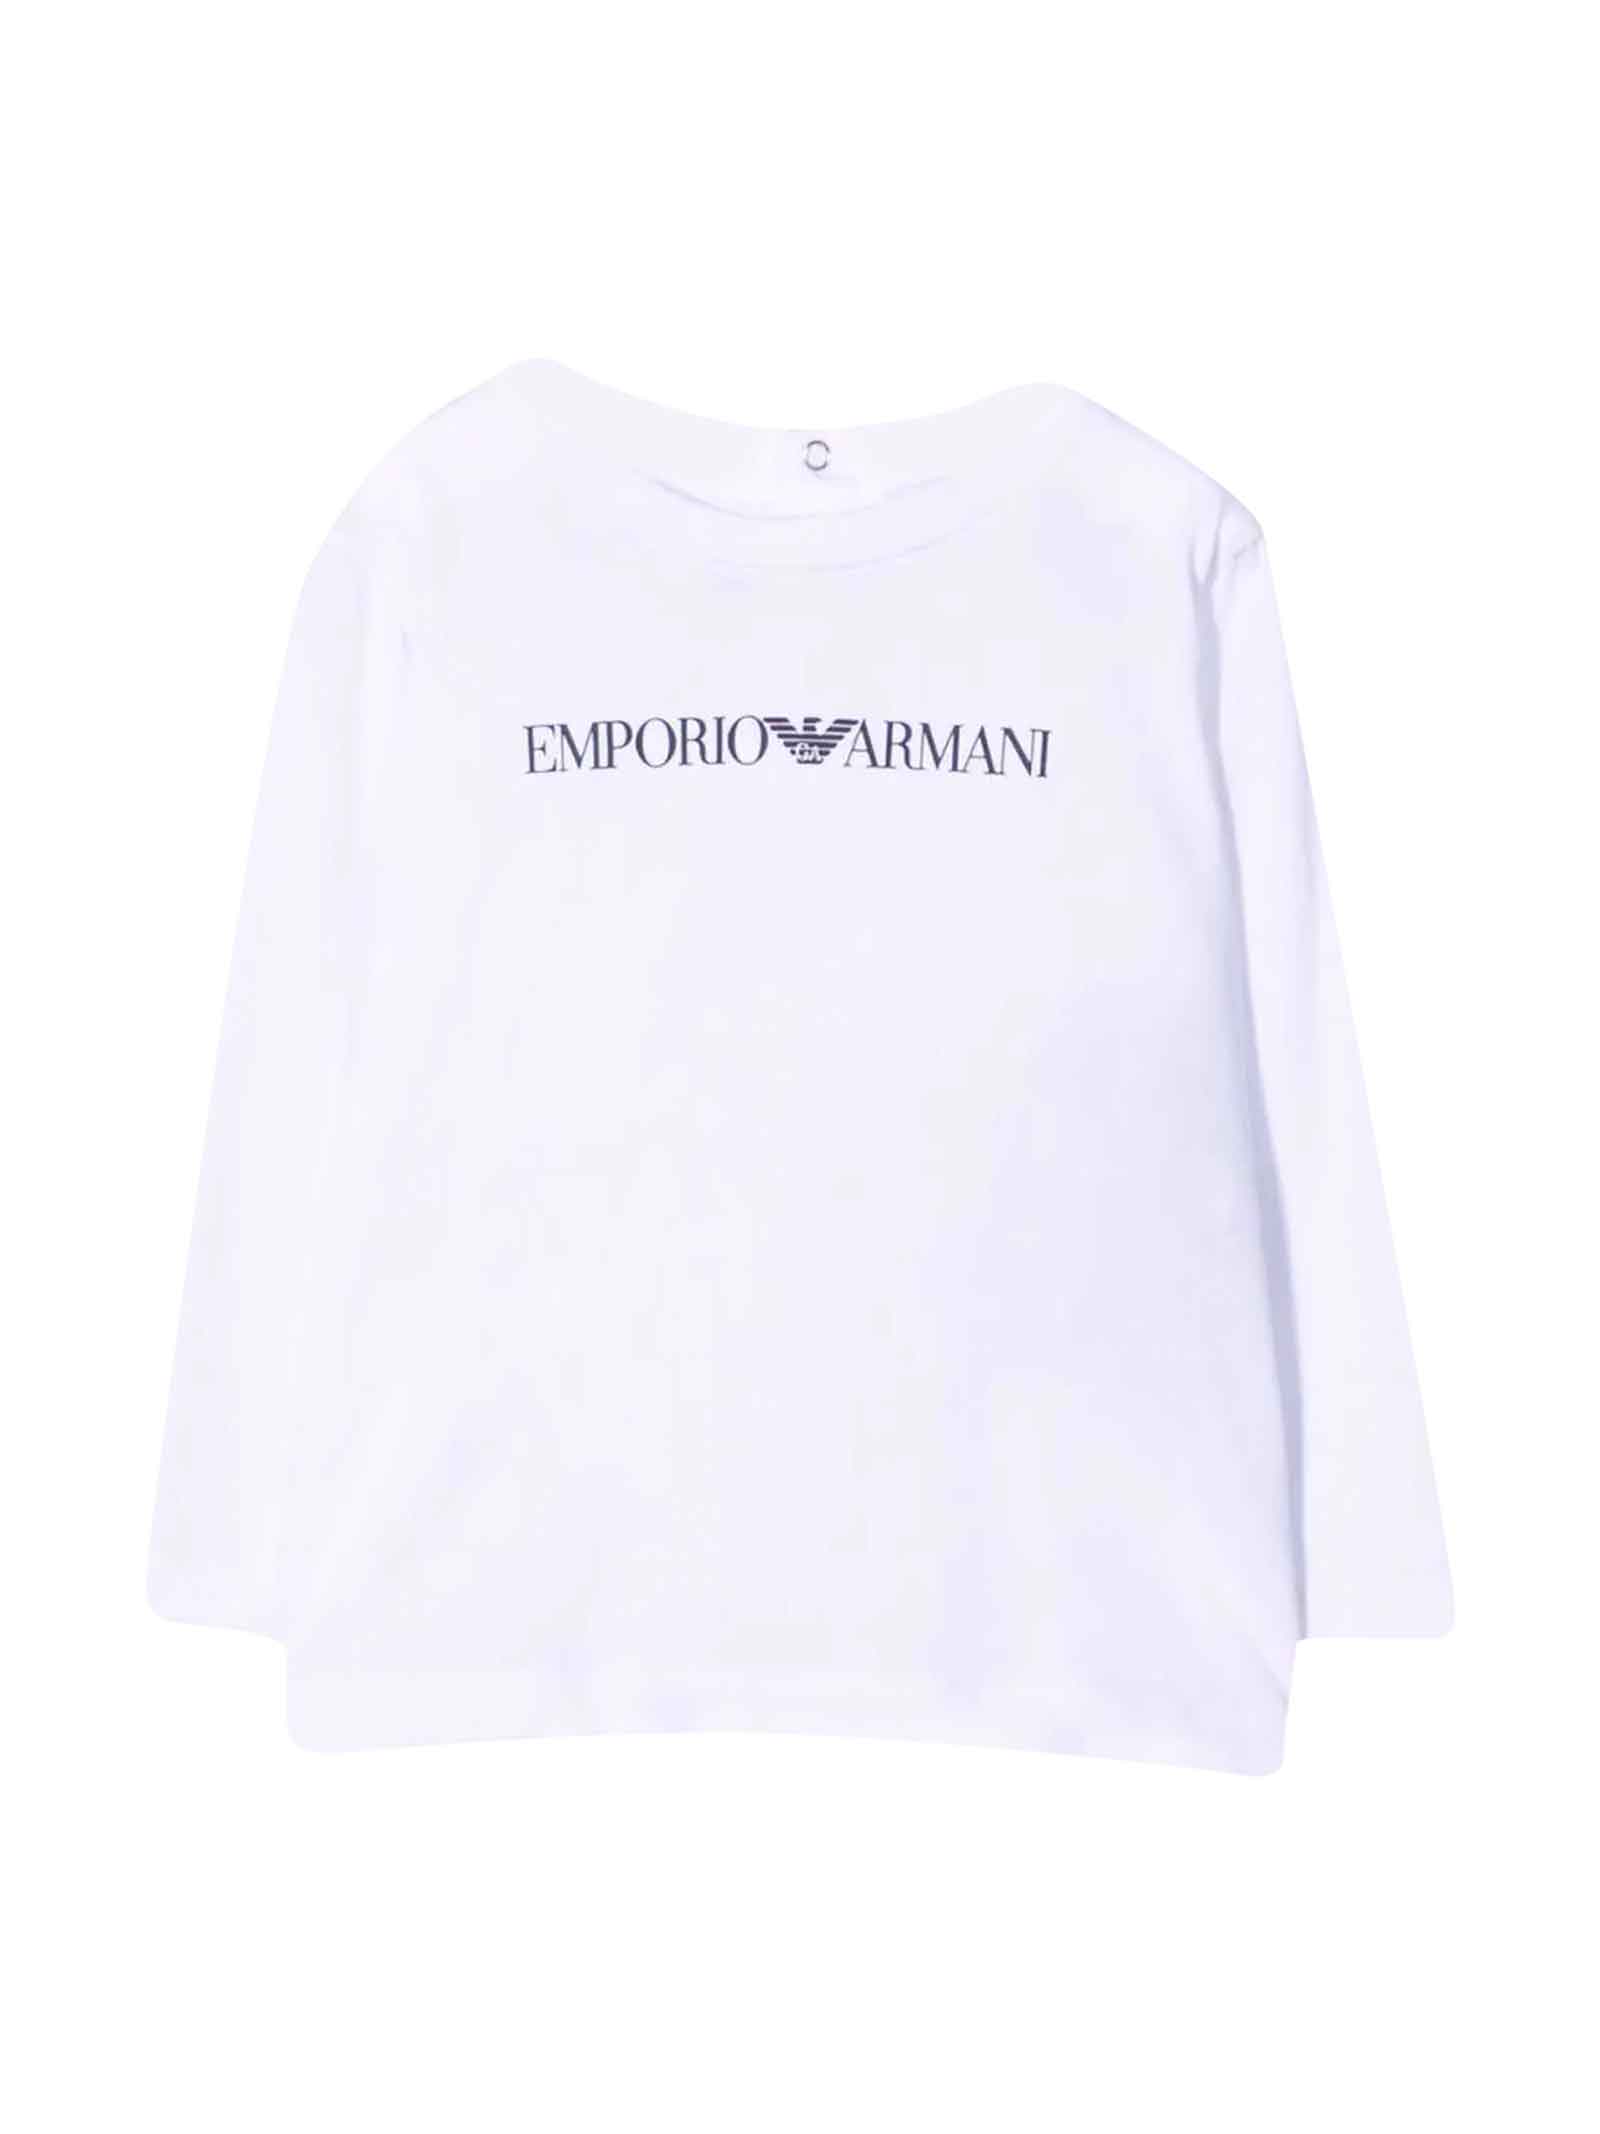 Emporio Armani White T-shirt Unisex